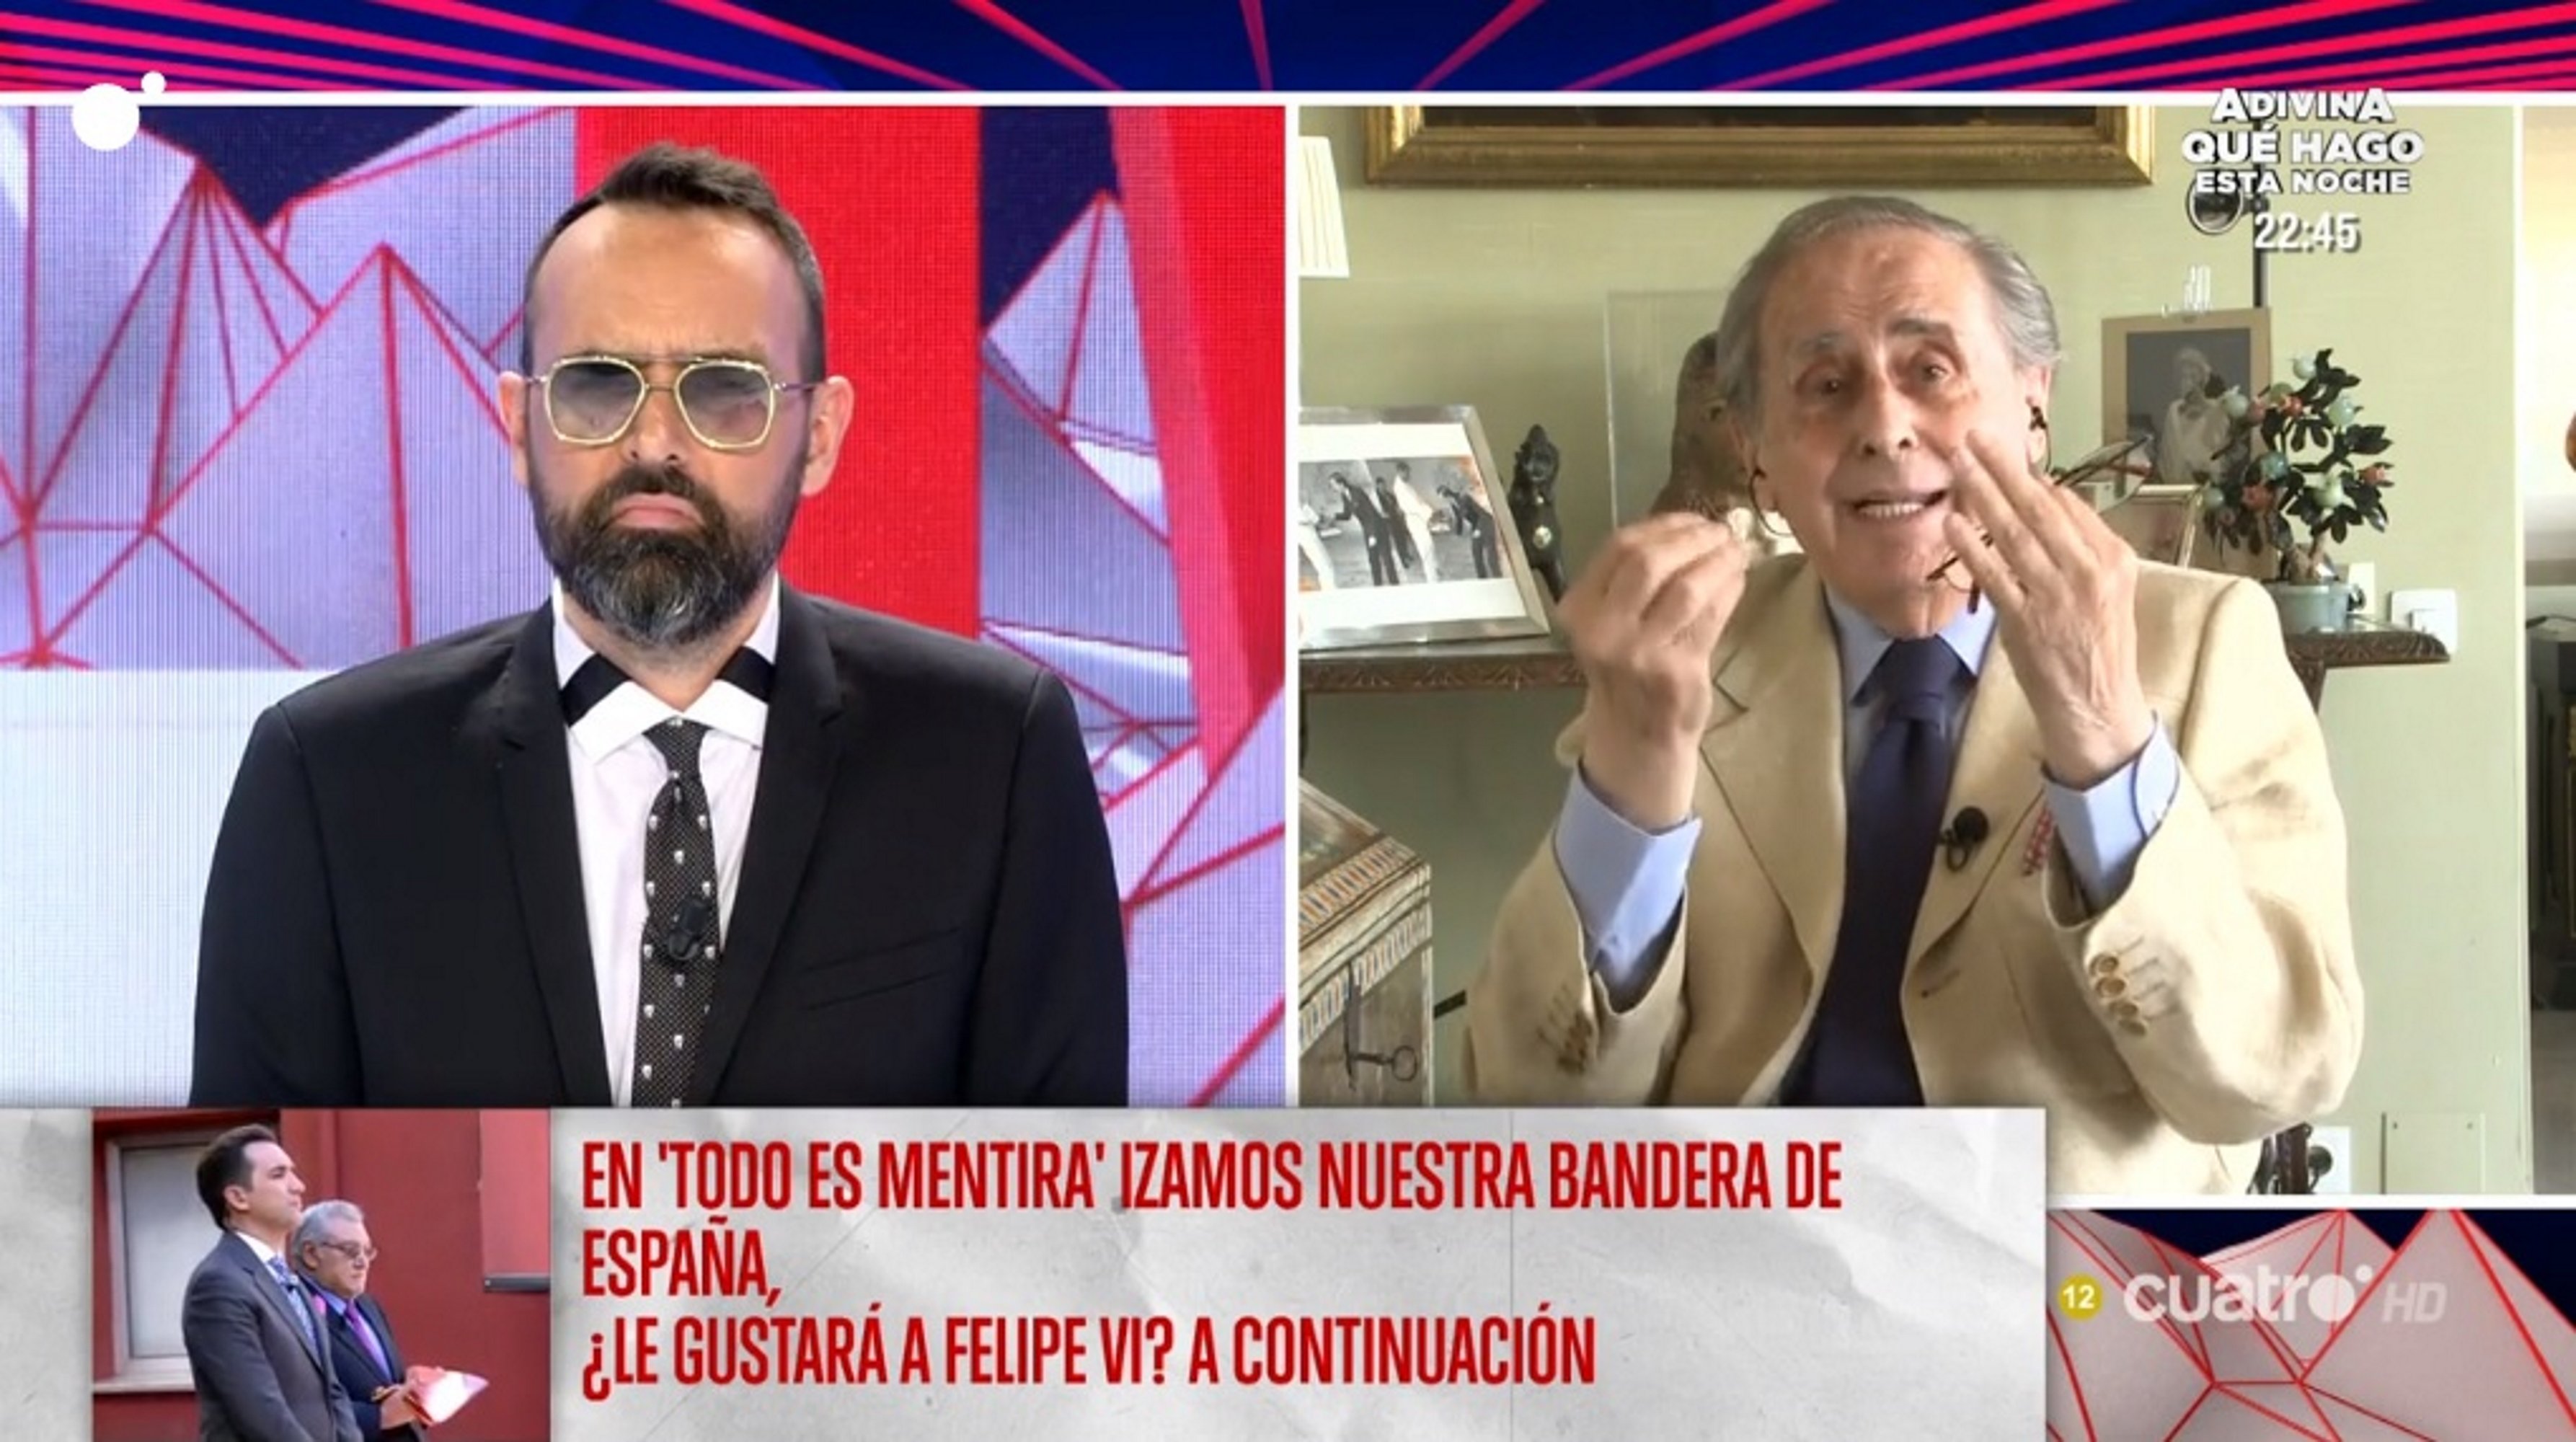 Peñafiel al programa de Risto: “Una mano negra ha apartado a Juan Carlos”